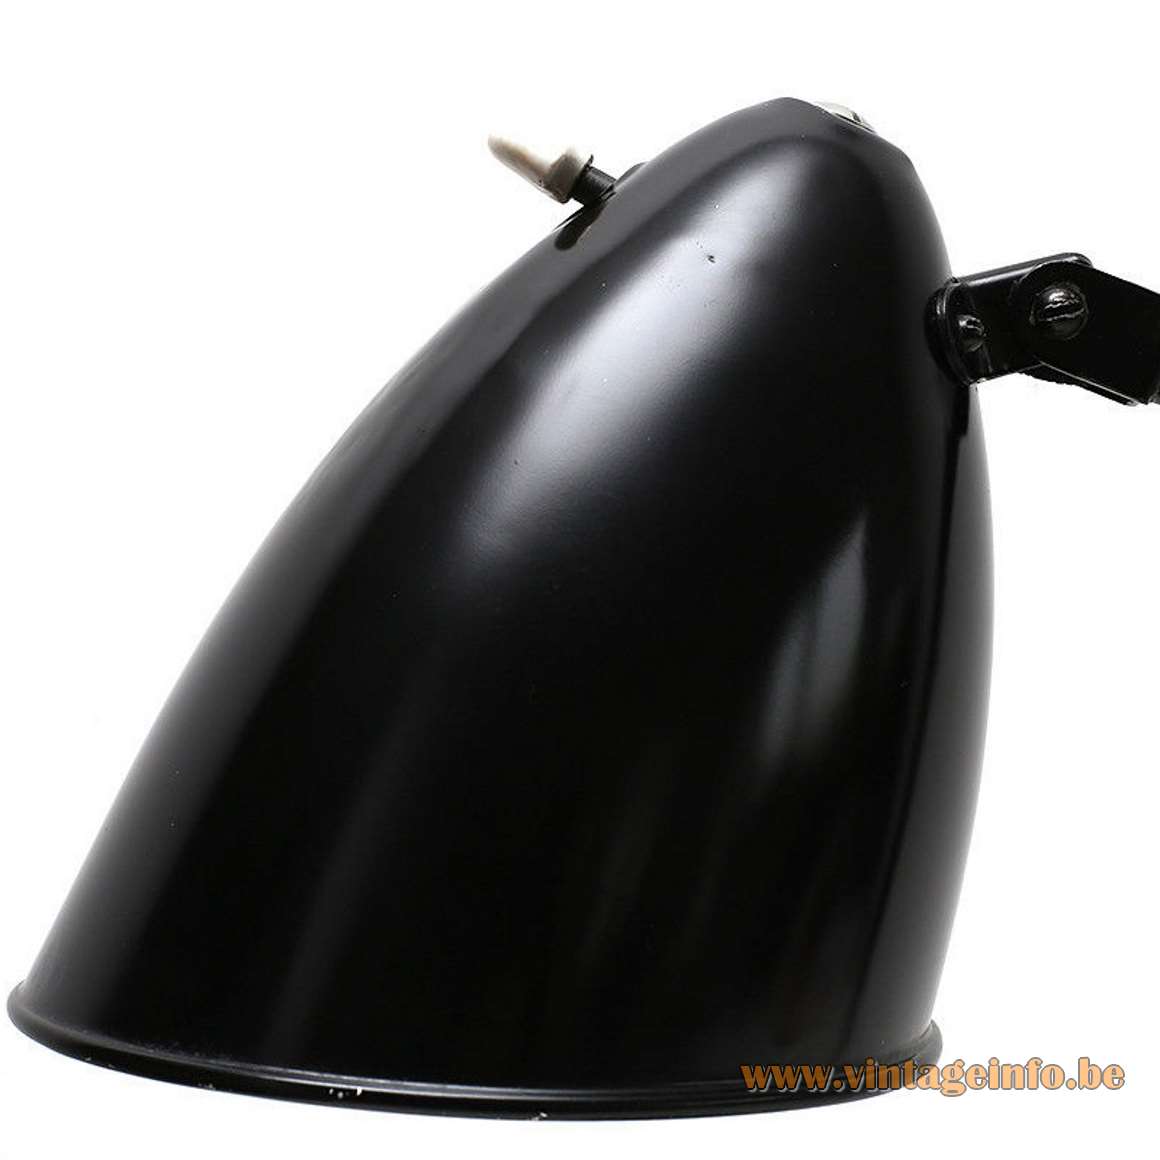 Hala Hannover desk lamp model 1464 black base, curved rod, bell shape lampshade 1930s, 1940s, art deco, Bauhaus